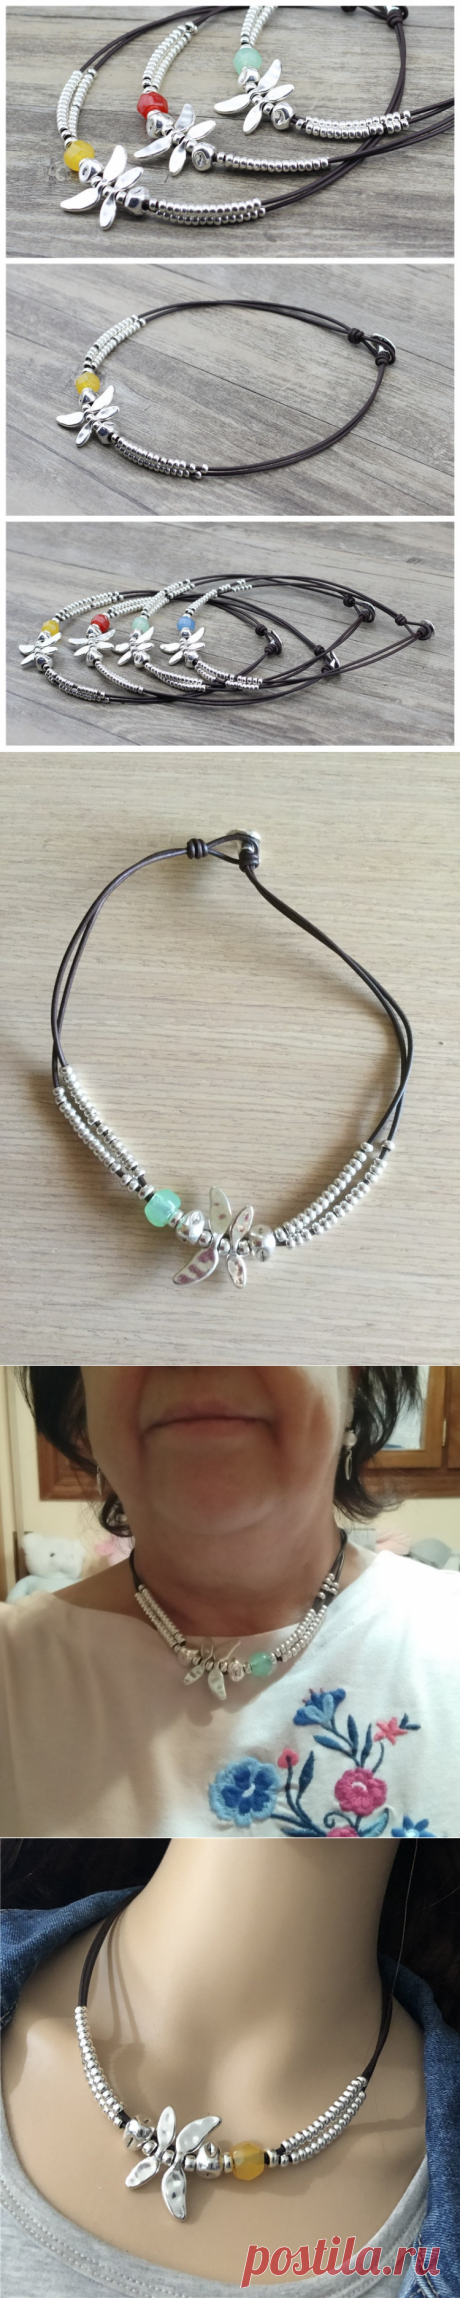 Женское колье-чокер со стрекозой Anslow, яркое ожерелье с креативным дизайном, подарок на день матери, LOW0020AN | Украшения и аксессуары | АлиЭкспресс